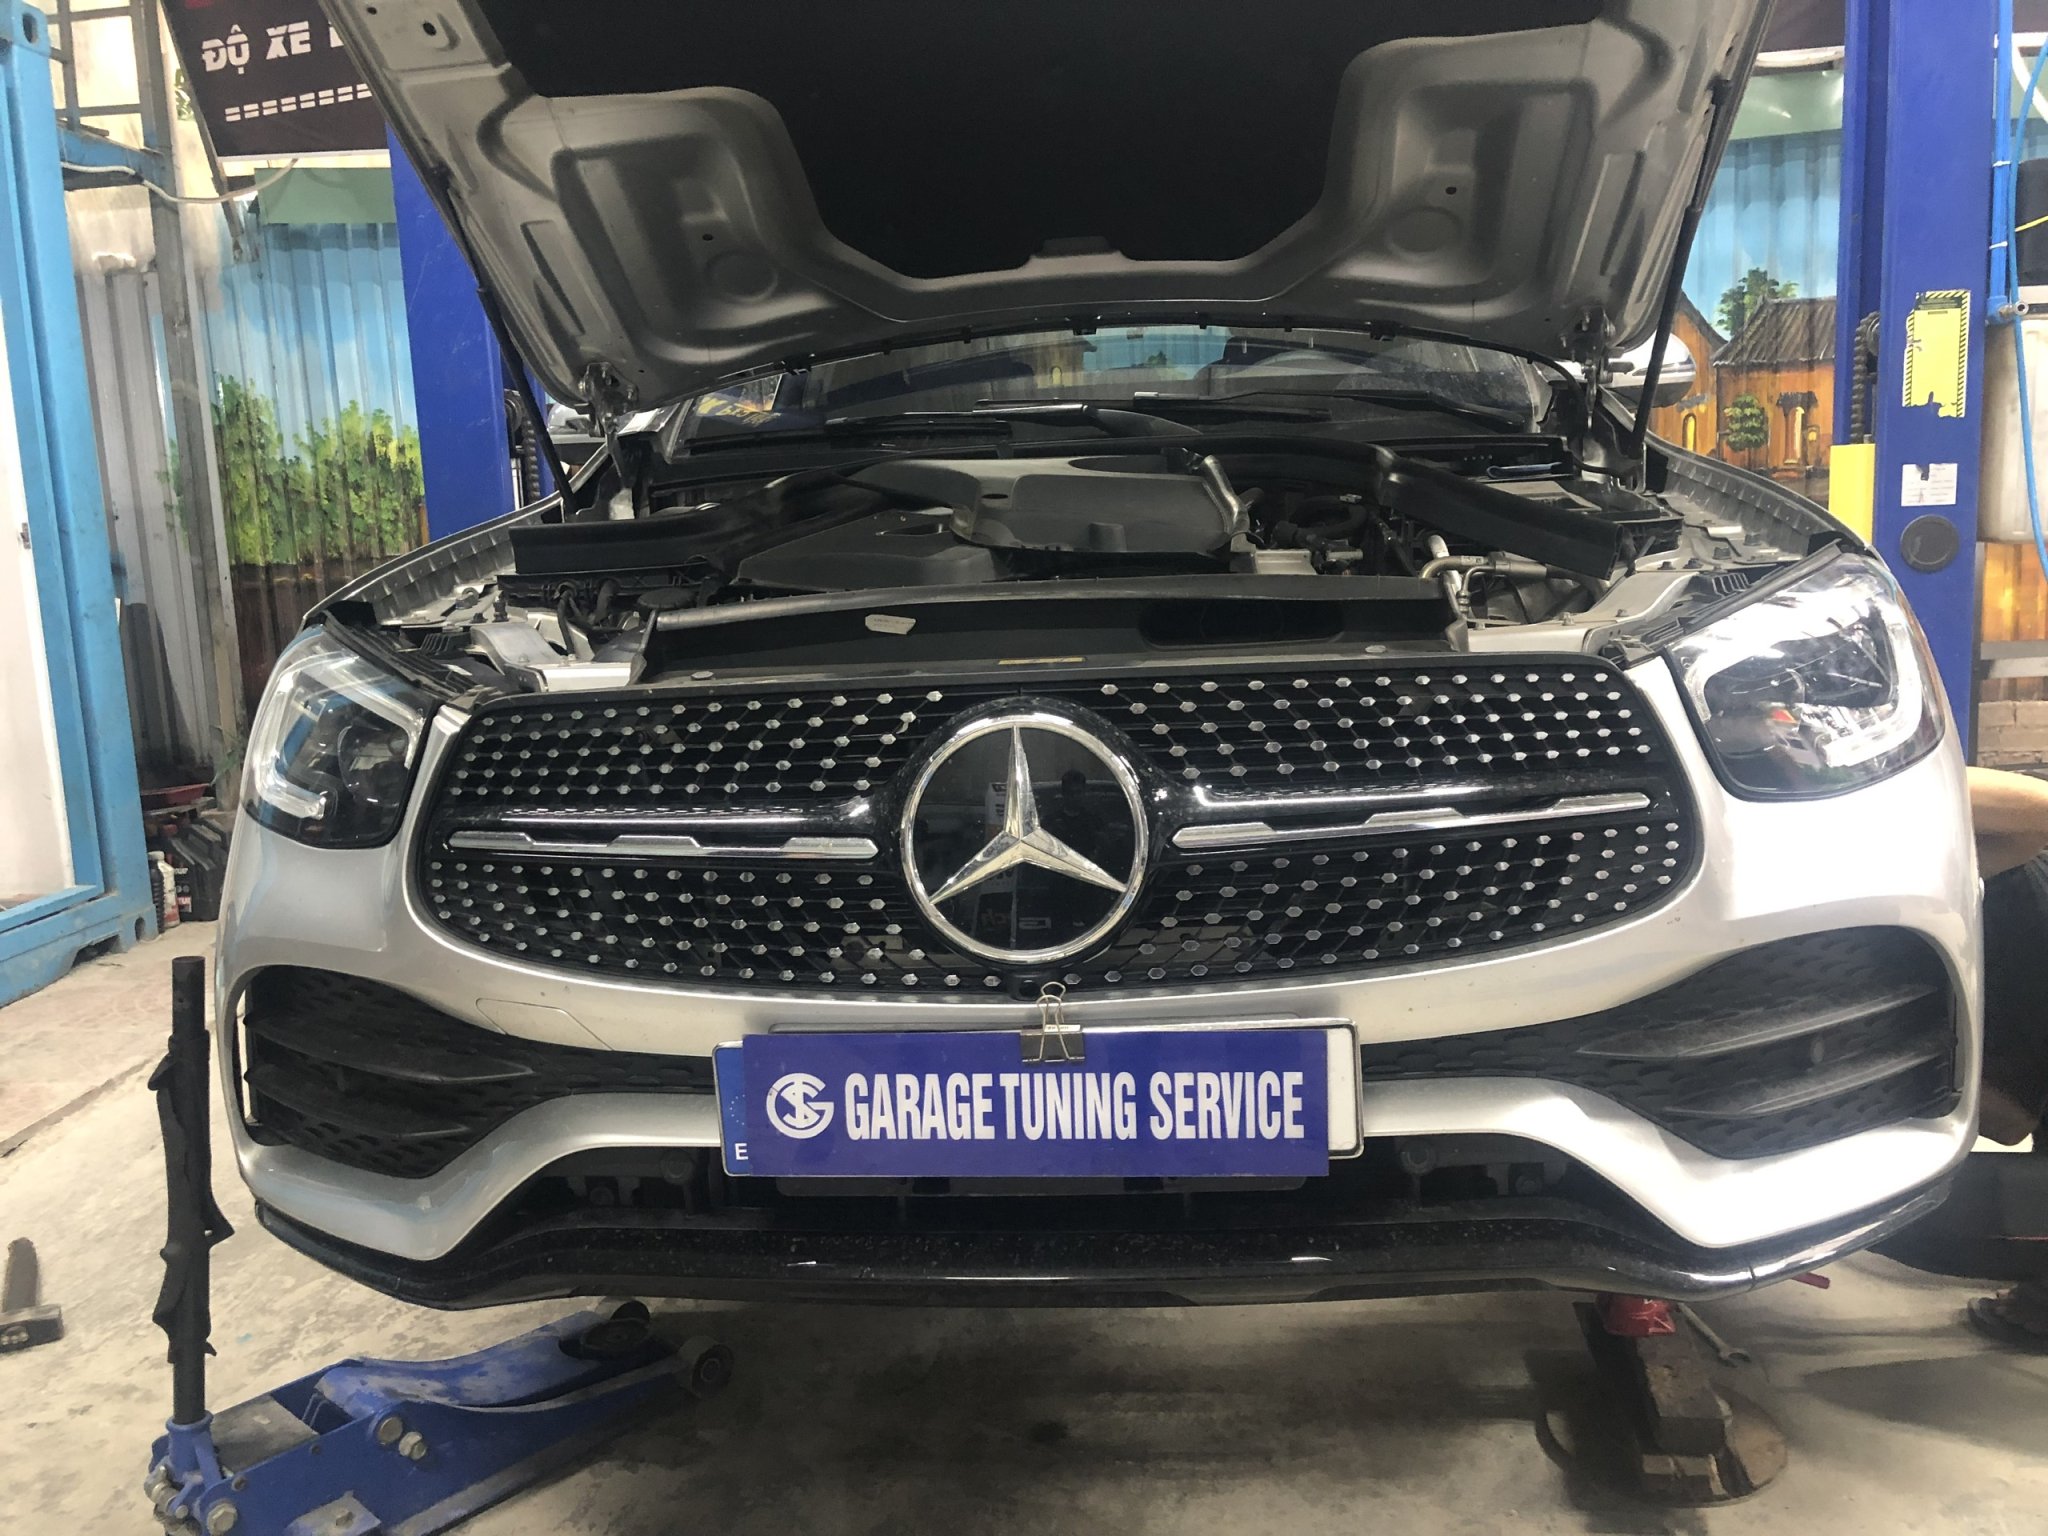 Gara sửa chữa hộp số xe Mercedes uy tín tại Hà Nội